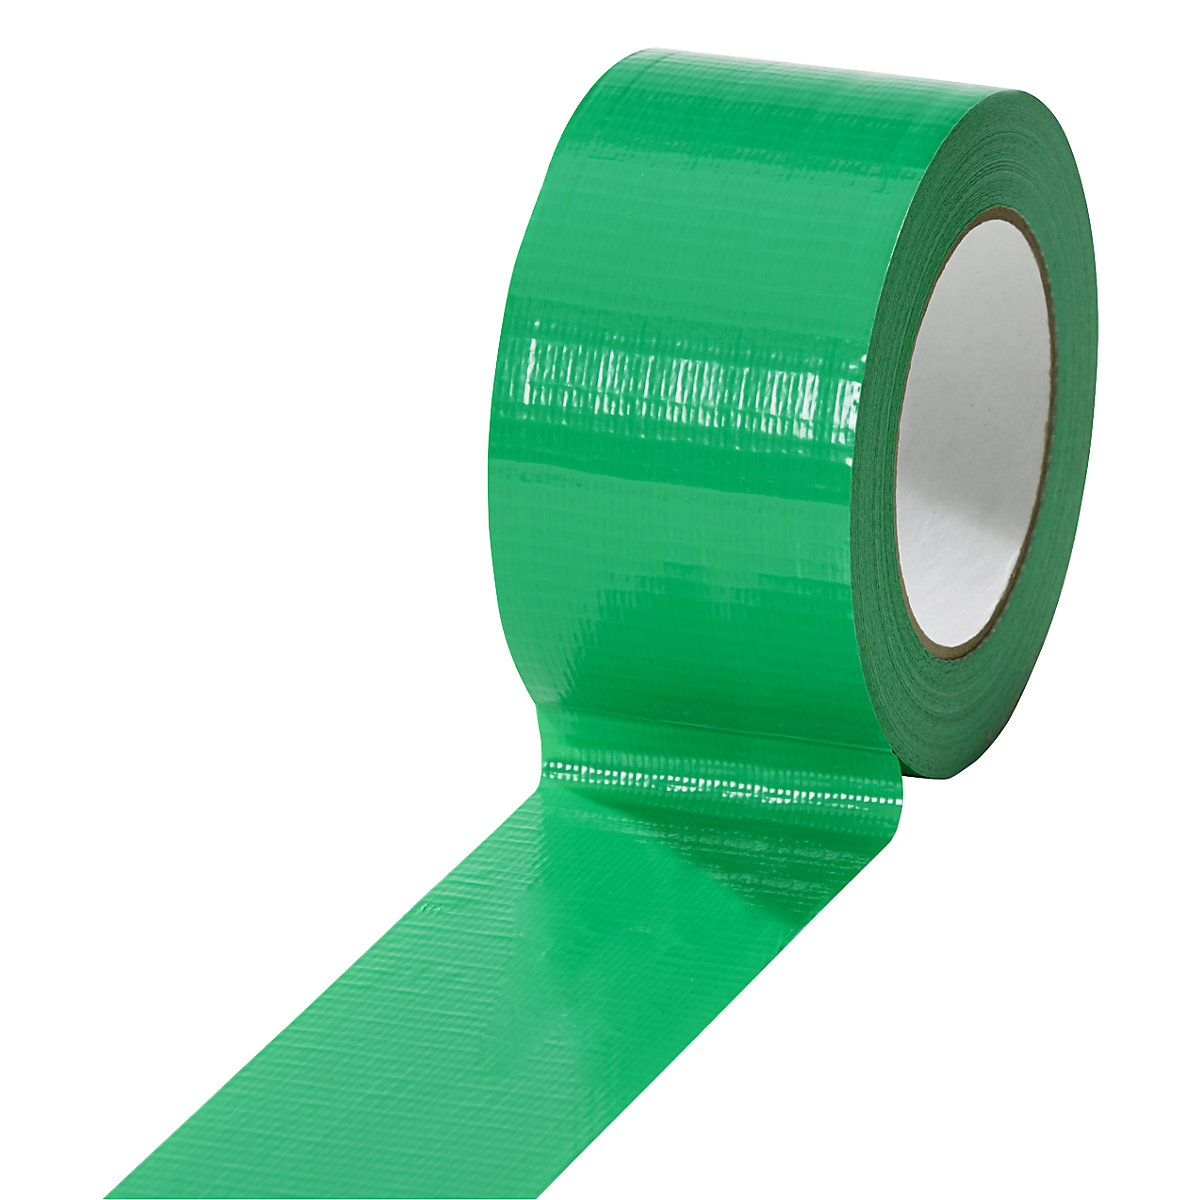 Tkaninová páska, v různých barvách, bal.j. 18 rolí, zelená, šířka pásky 50 mm-5